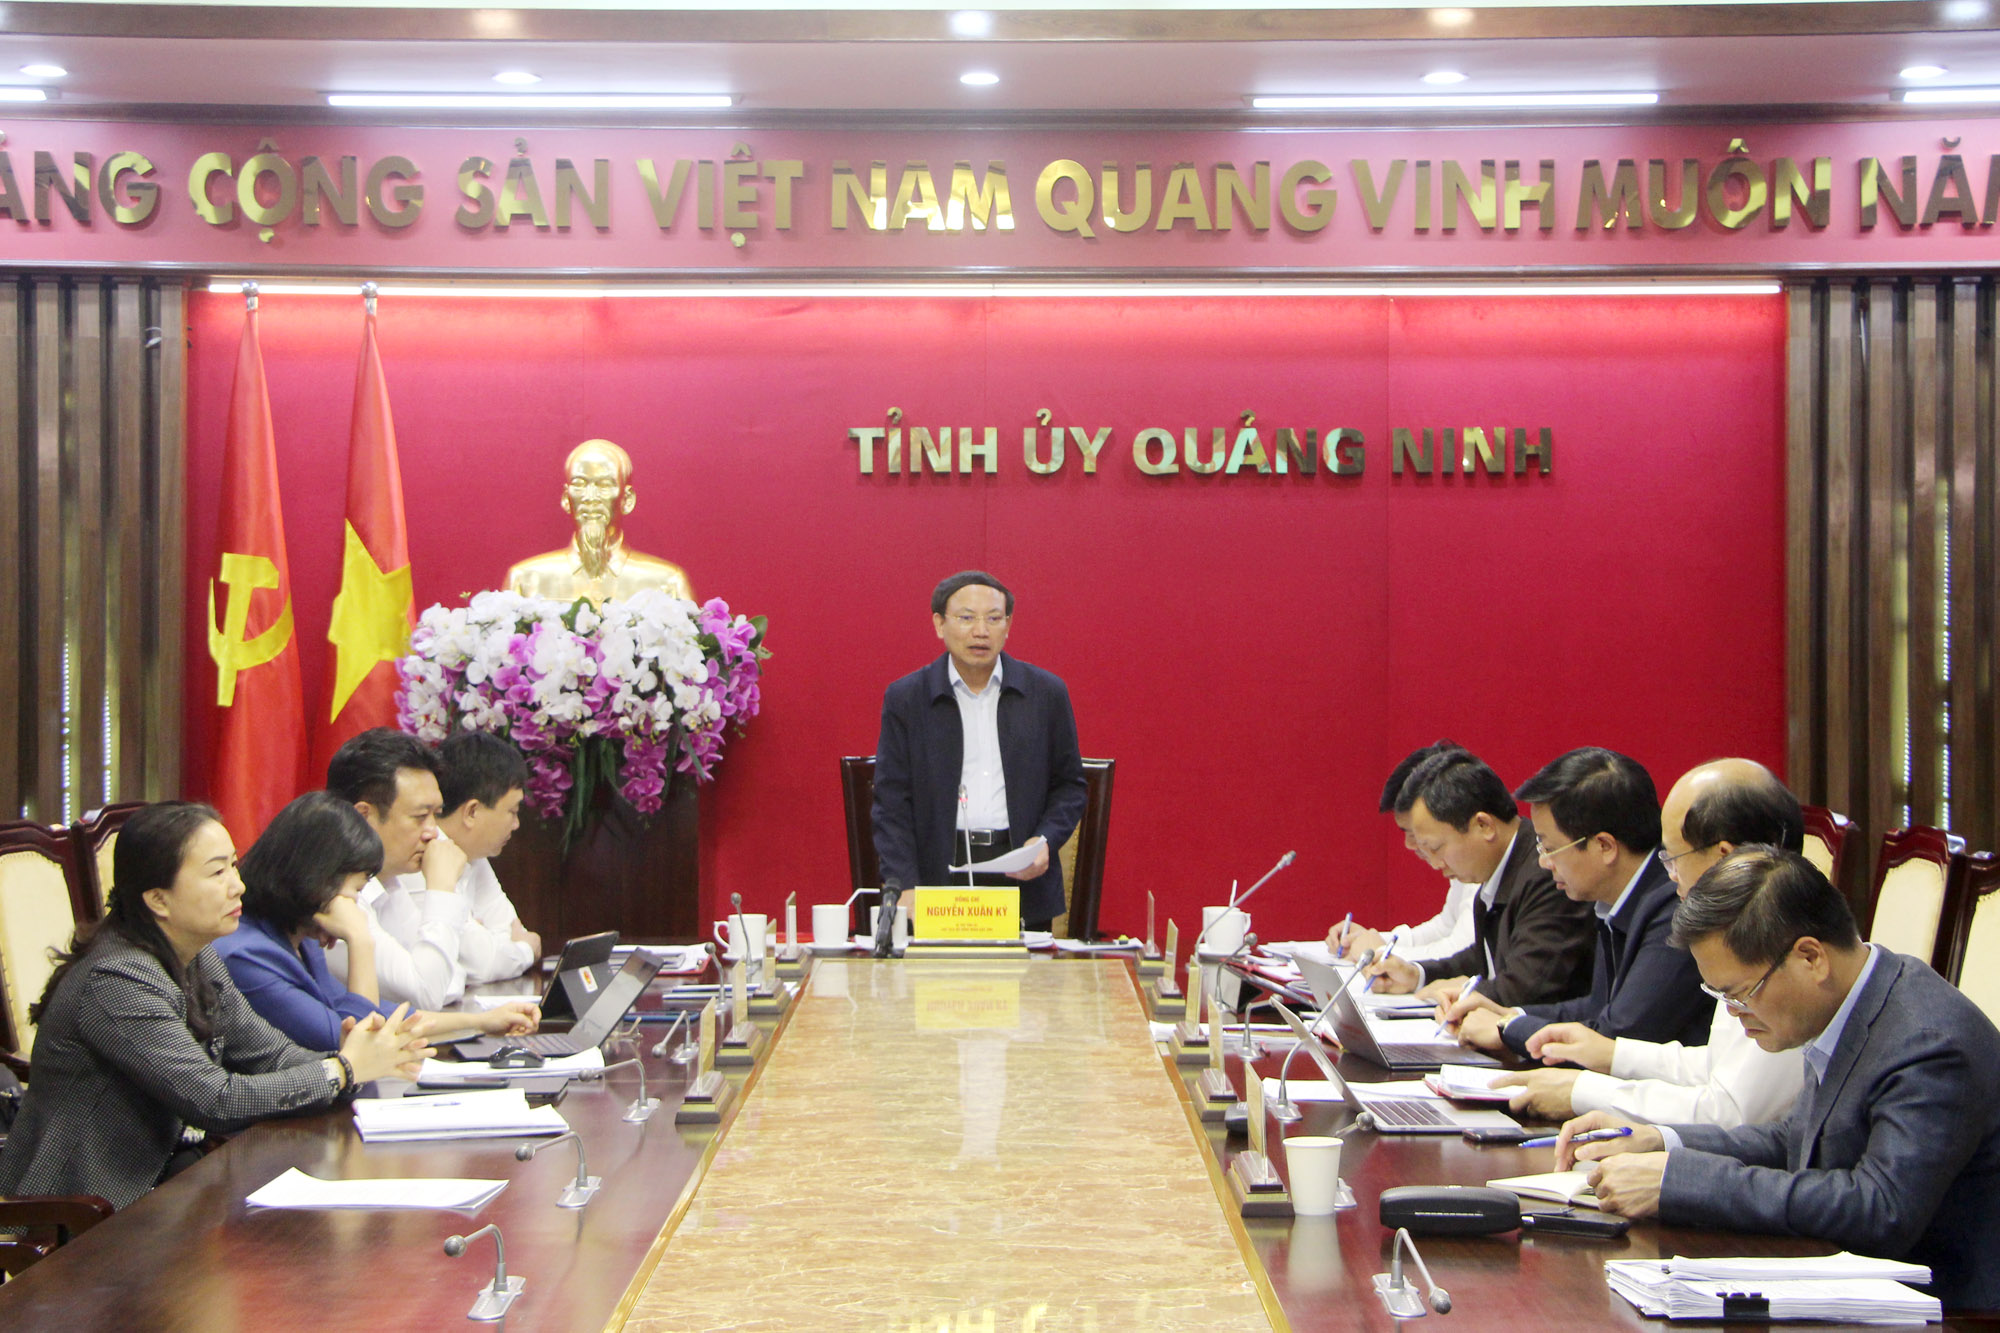 Đồng chí Nguyễn Xuân Ký, Bí thư Tỉnh ủy, Chủ tịch HĐND tỉnh, kết luận cuộc họp.